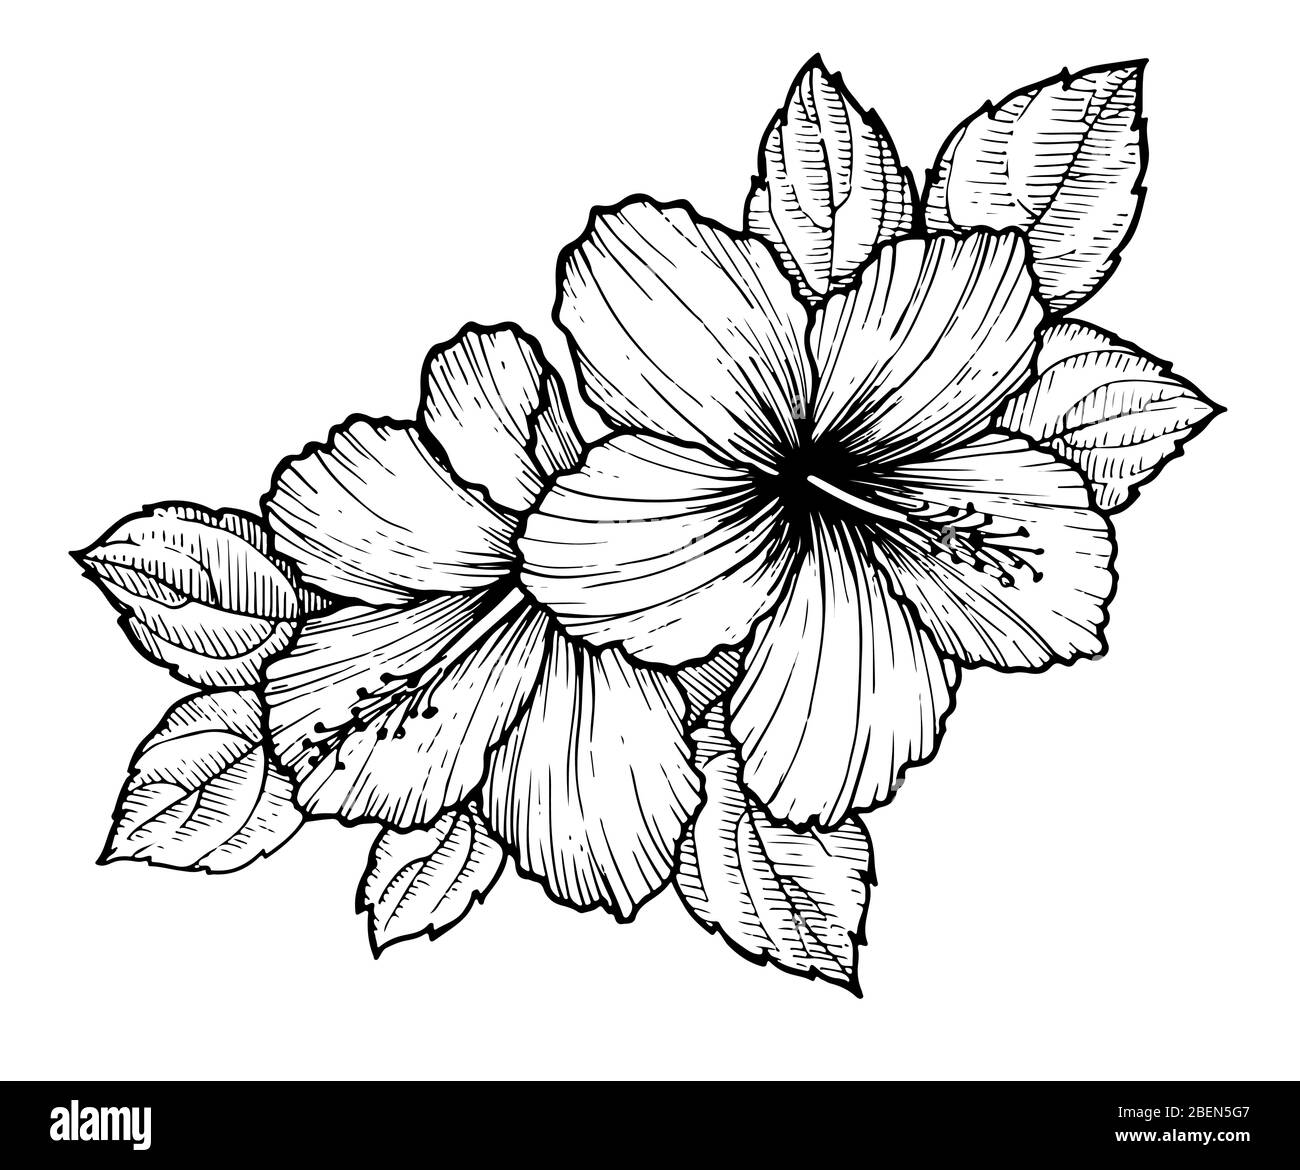 Fleurs d'hibiscus tropicales dessinées à la main avec feuilles. Esquissez des fleurs sur fond blanc. Fleurs exotiques, style de gravure pour textile, design de surface ou BAN Illustration de Vecteur